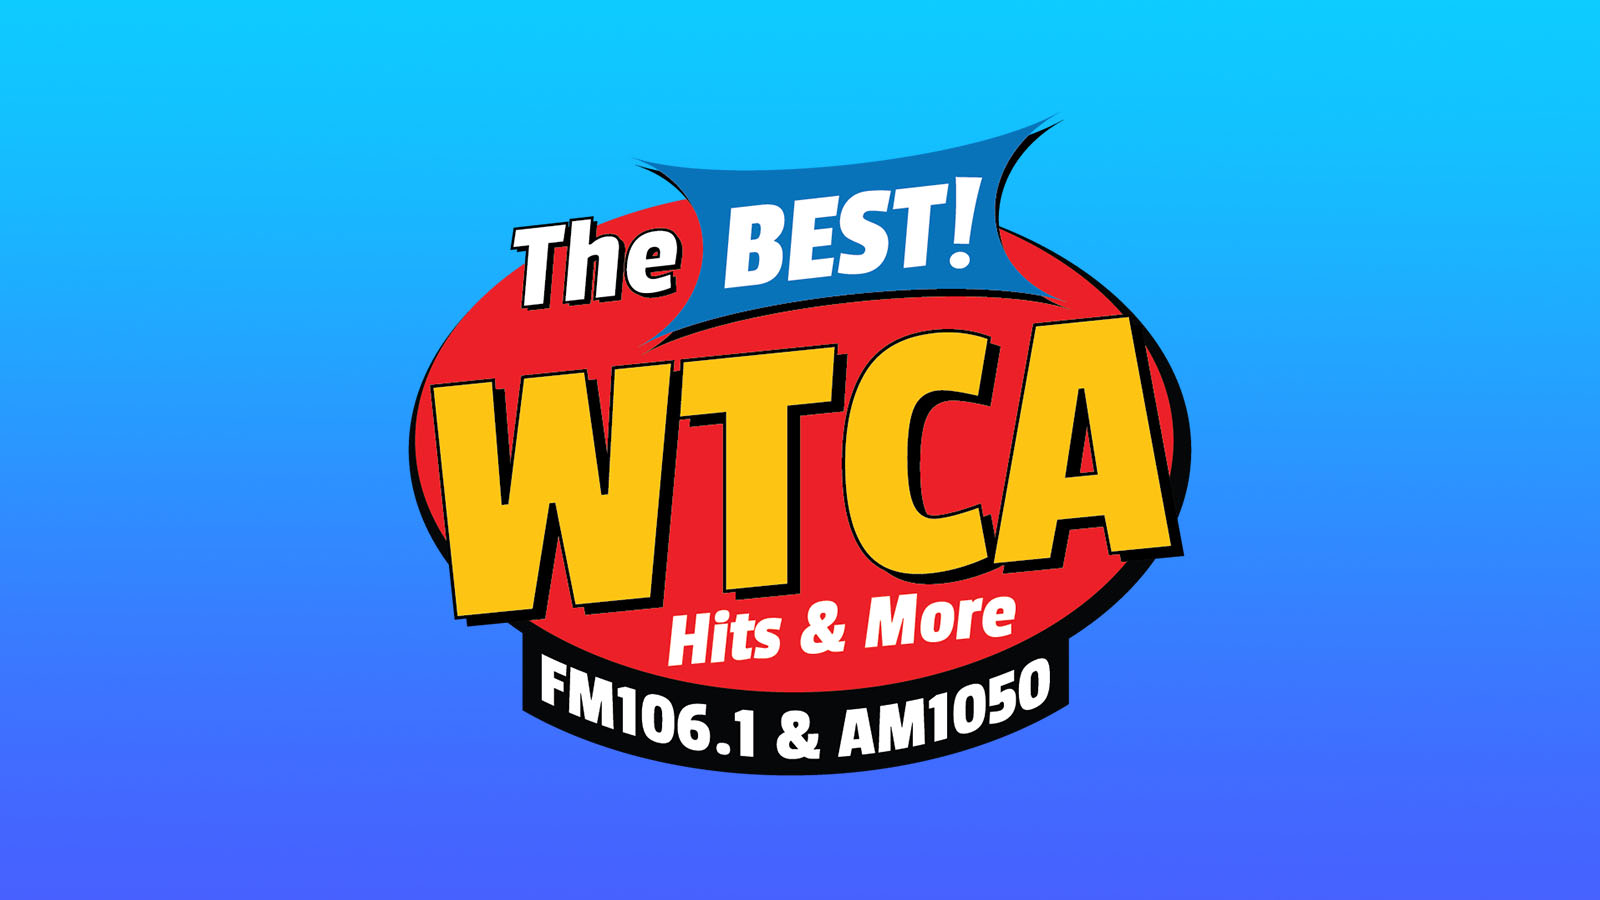 WTCA News